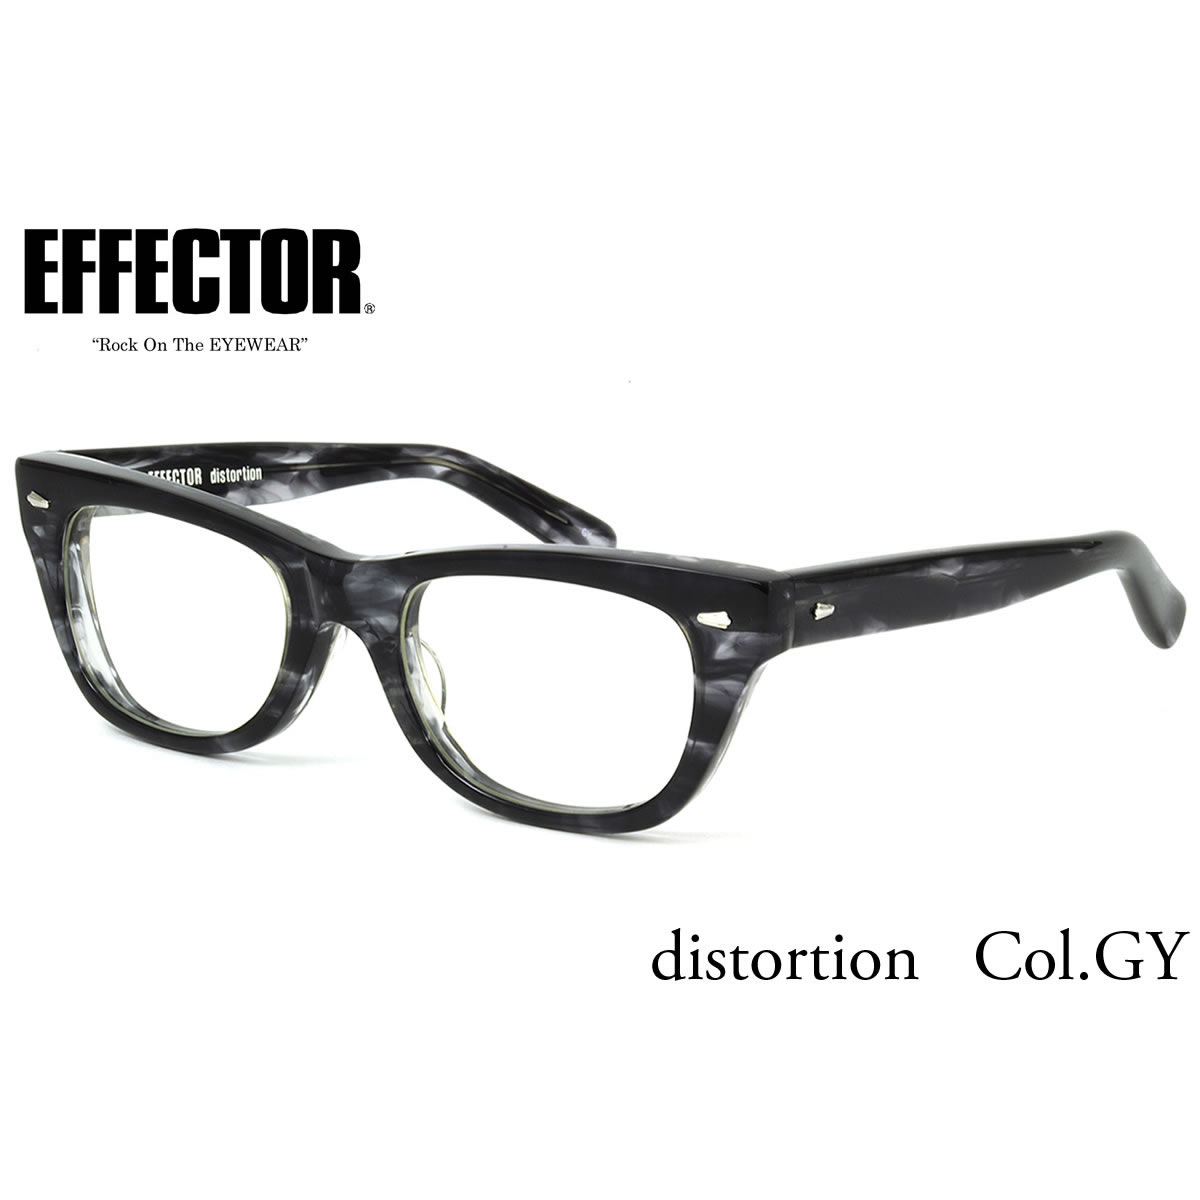 楽天市場 Effector エフェクター 眼鏡 メガネ フレーム Distortion Gy 52サイズ エフェクター Effector ディストーション Uvカット仕様伊達メガネレンズ付 日本製 メンズ レディース メガネ サングラスのthat S